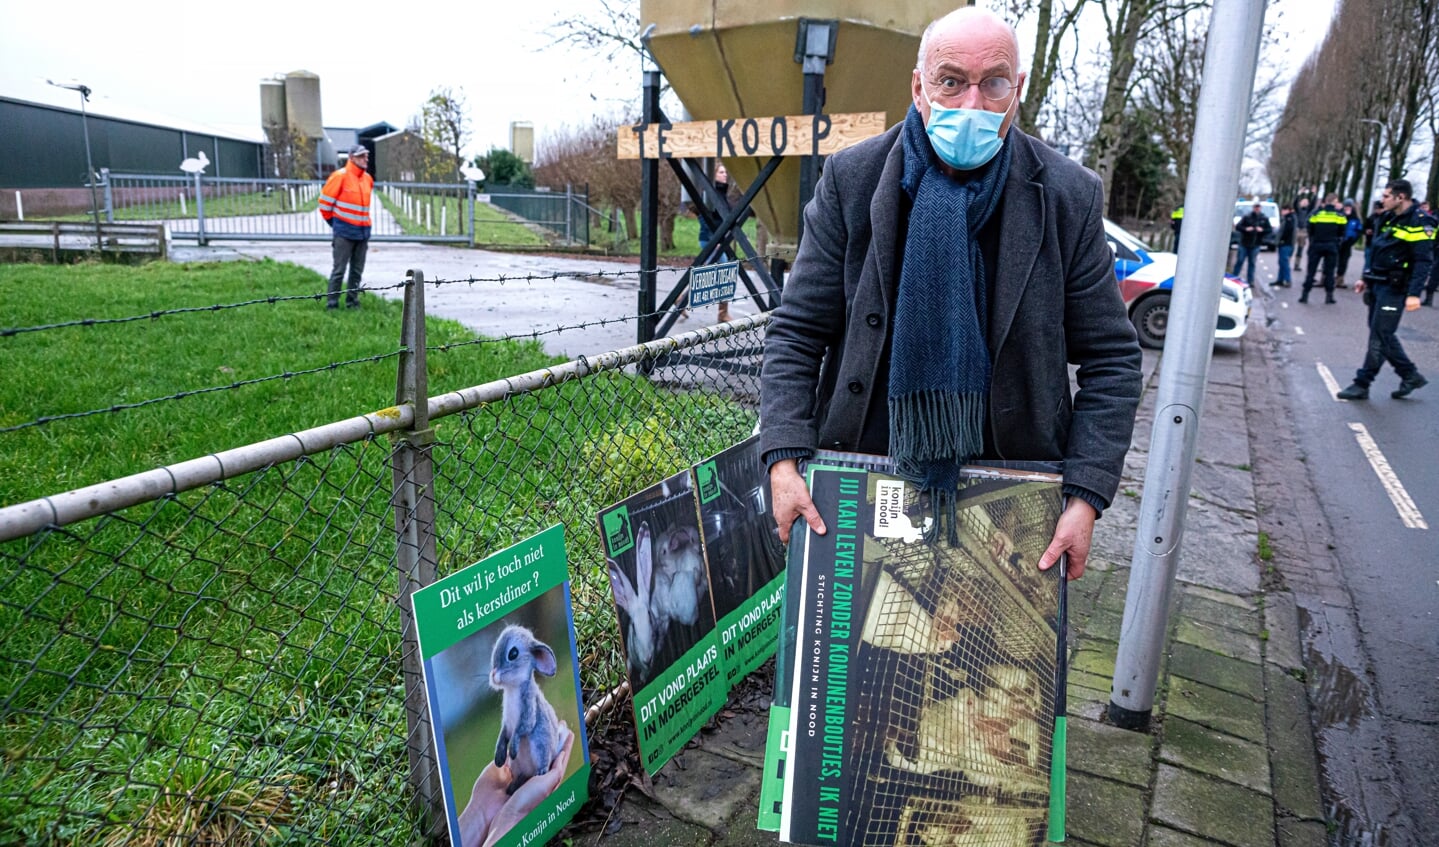 Protest bij konijnenfokkerij in Leerbroek